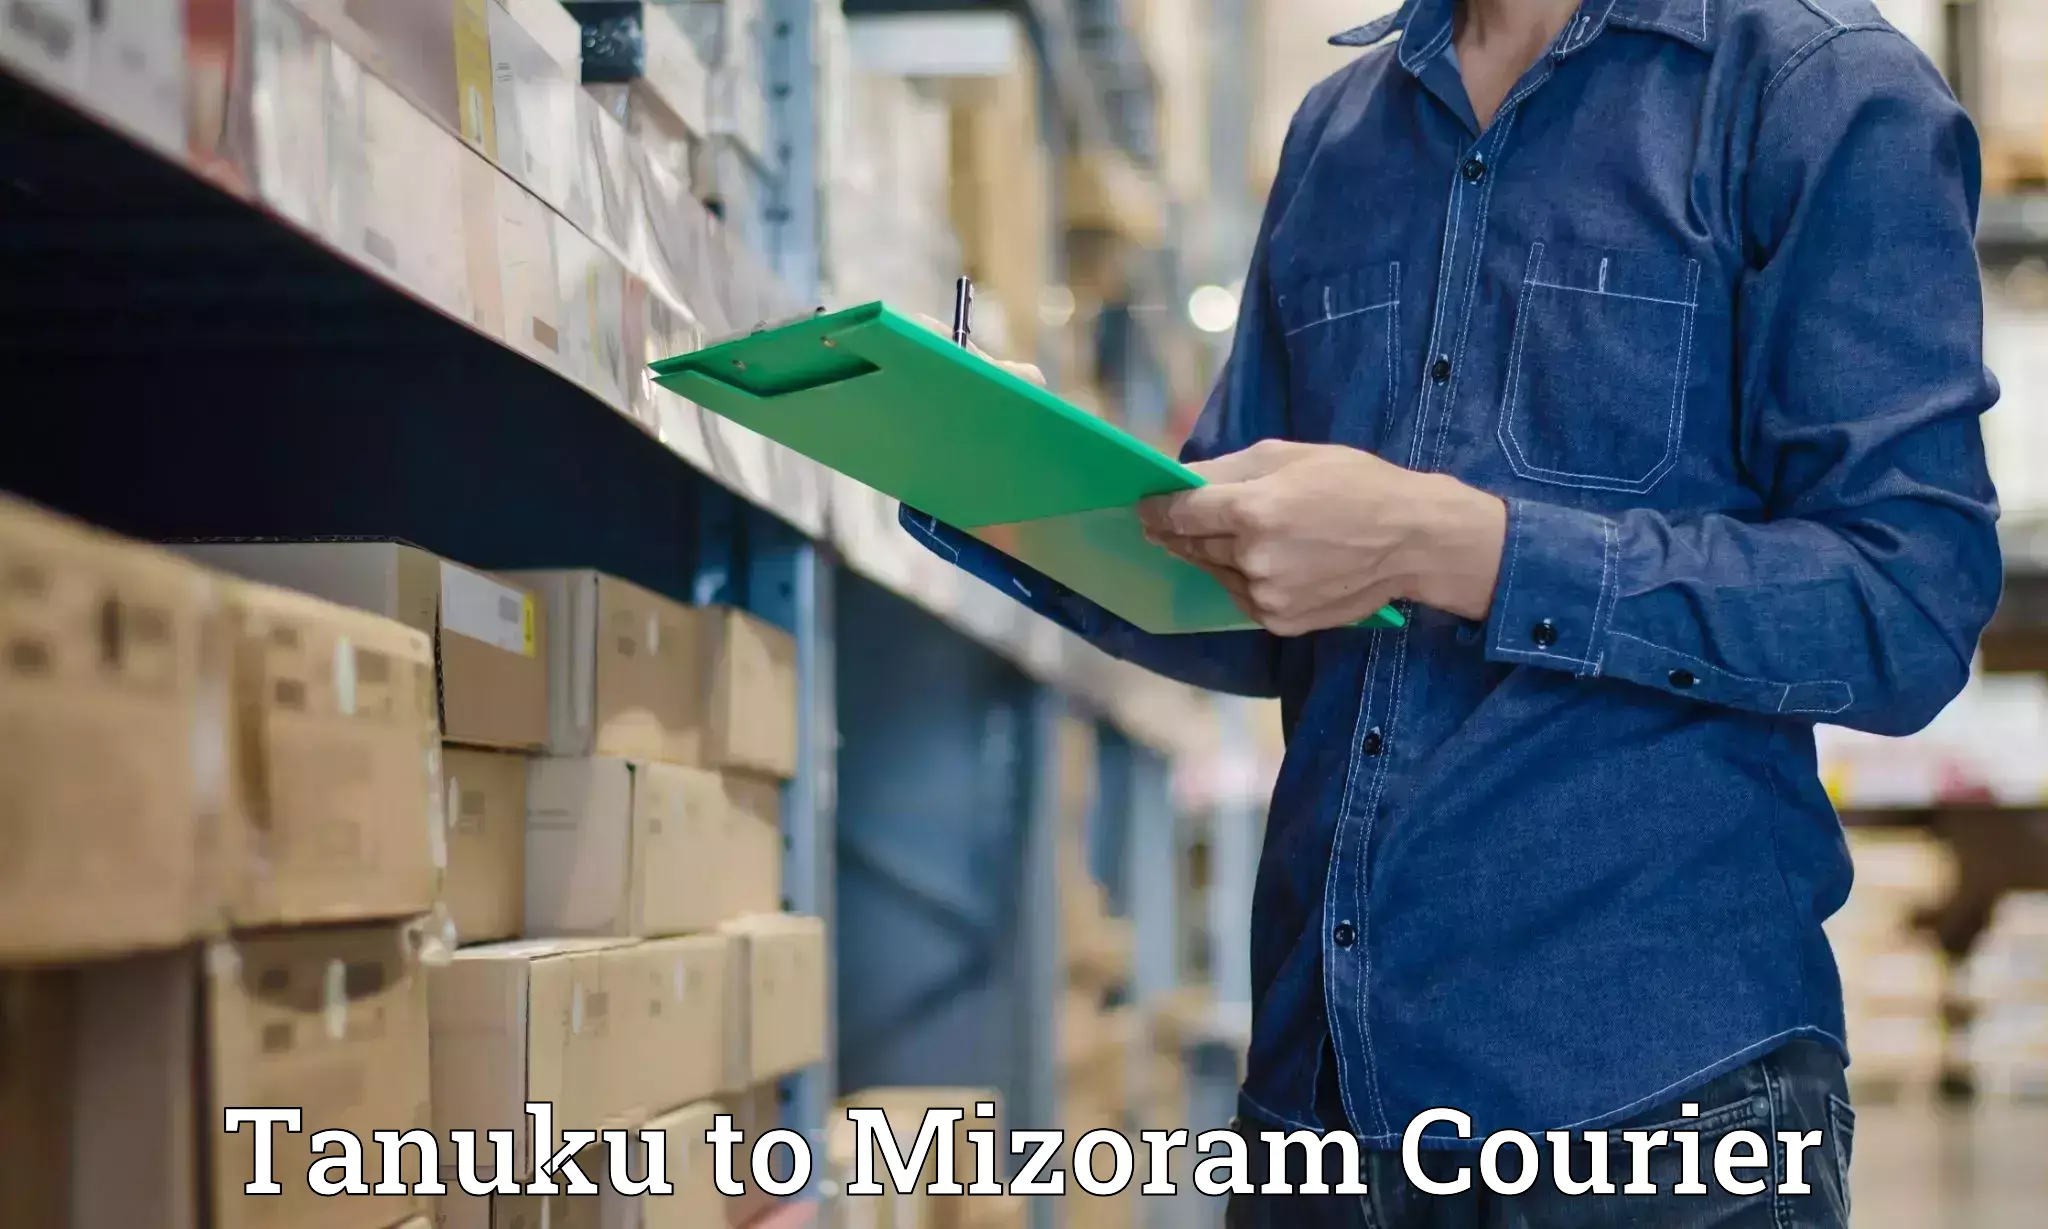 Baggage shipping experts Tanuku to Mizoram